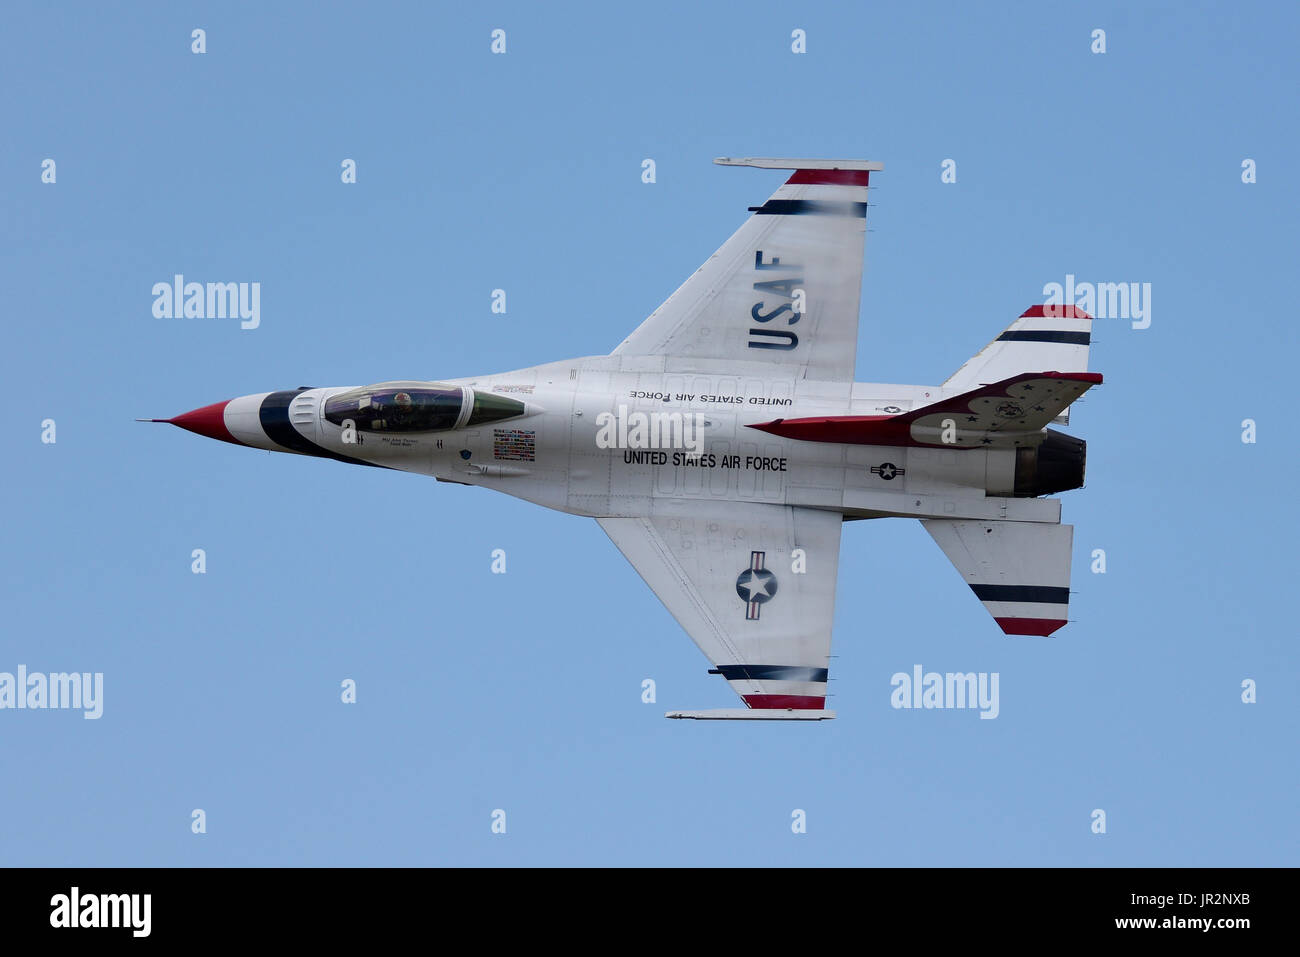 El Escuadrón de Demostración Aérea de Thunderbirds de la Fuerza Aérea de LOS ESTADOS UNIDOS muestra el avión a reacción del equipo en un espectáculo aéreo Foto de stock